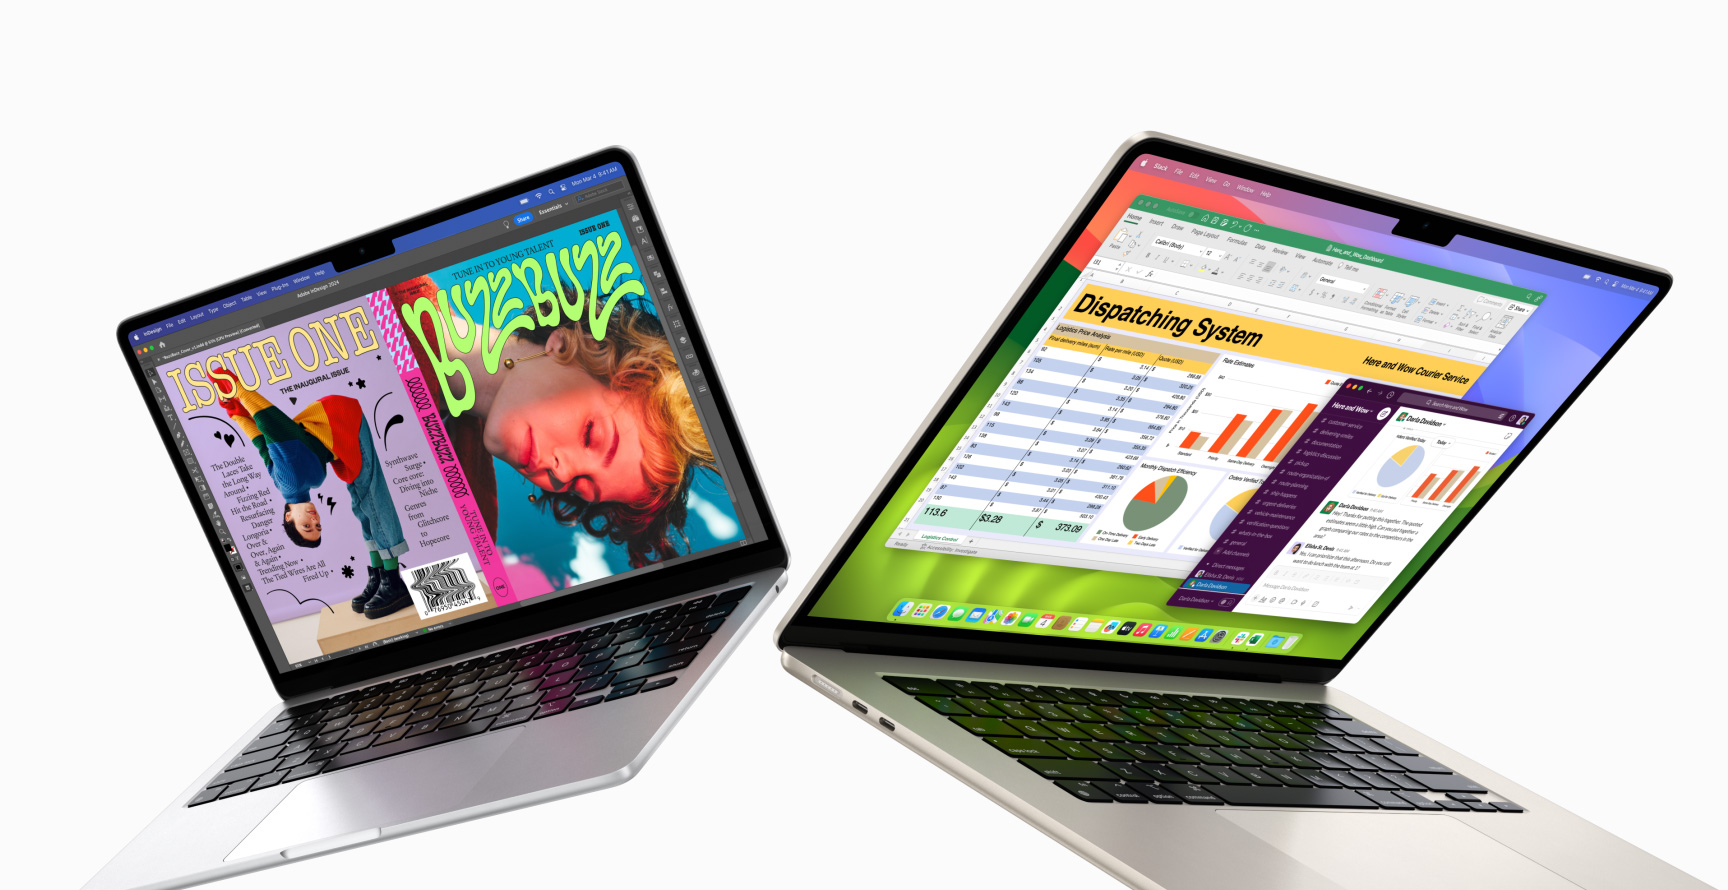 Częściowo otwarte 13-calowy MacBook Air po lewej stronie i 15-calowy MacBook Air po prawej stronie. 13-calowy ekran wyświetla kolorową okładkę magazynu stworzoną w programie In Design. 15-calowy ekran wyświetla aplikacje Microsoft Excel i Slack.